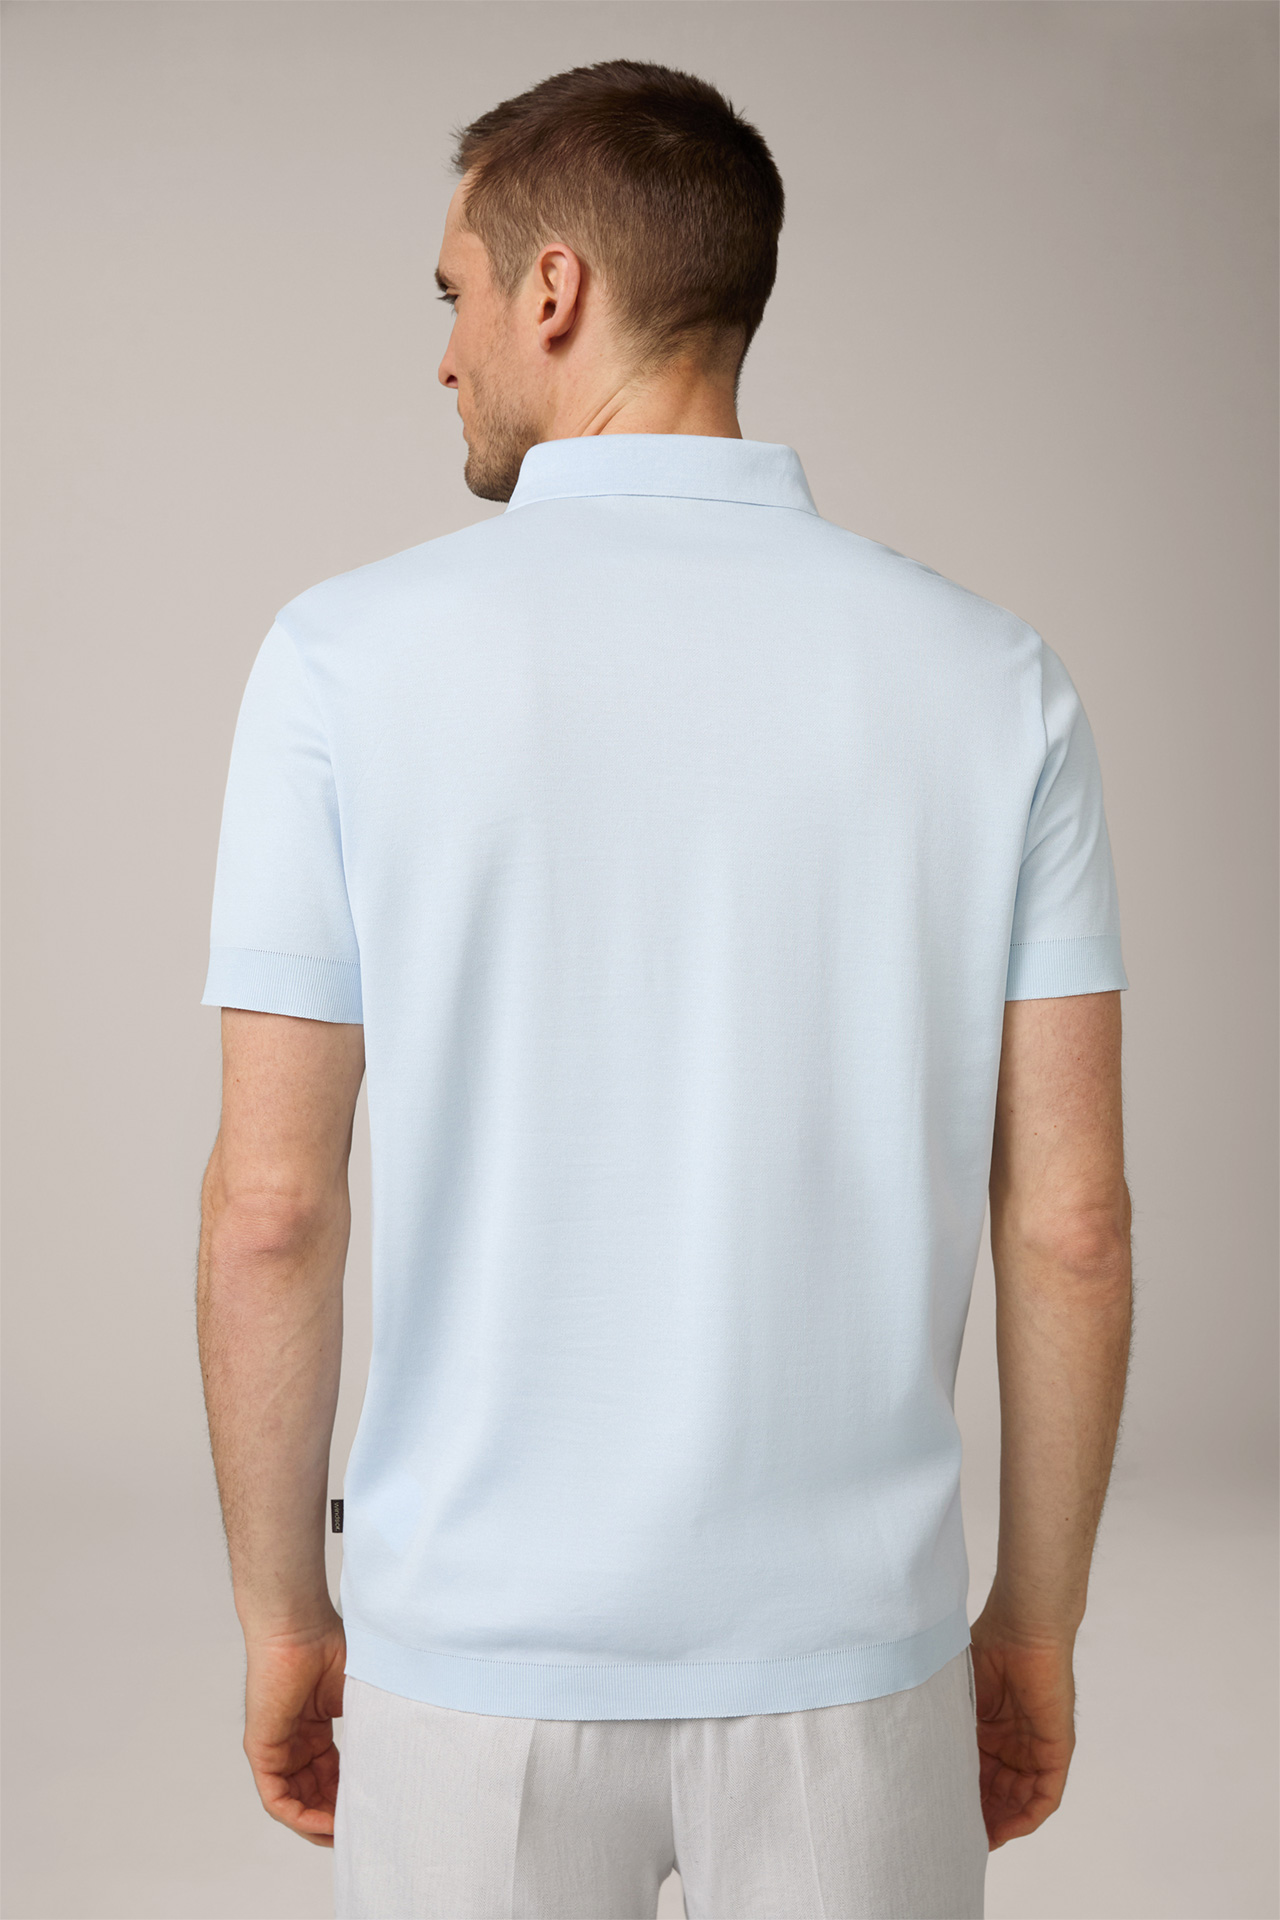 Floro Cotton Polo Shirt in Light Blue 